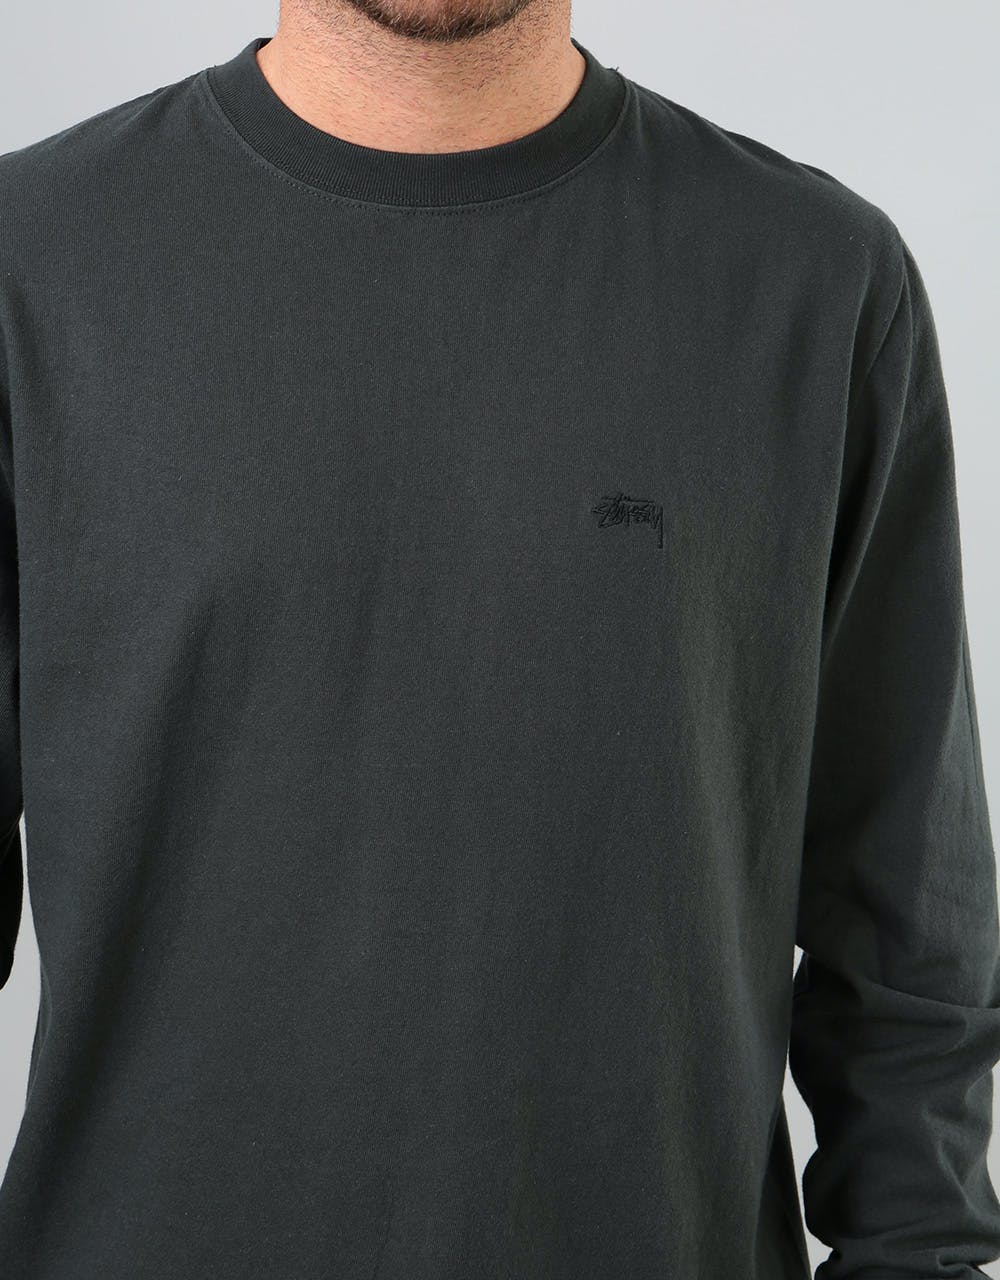 Stüssy Stock L/S Jersey T-Shirt - Black